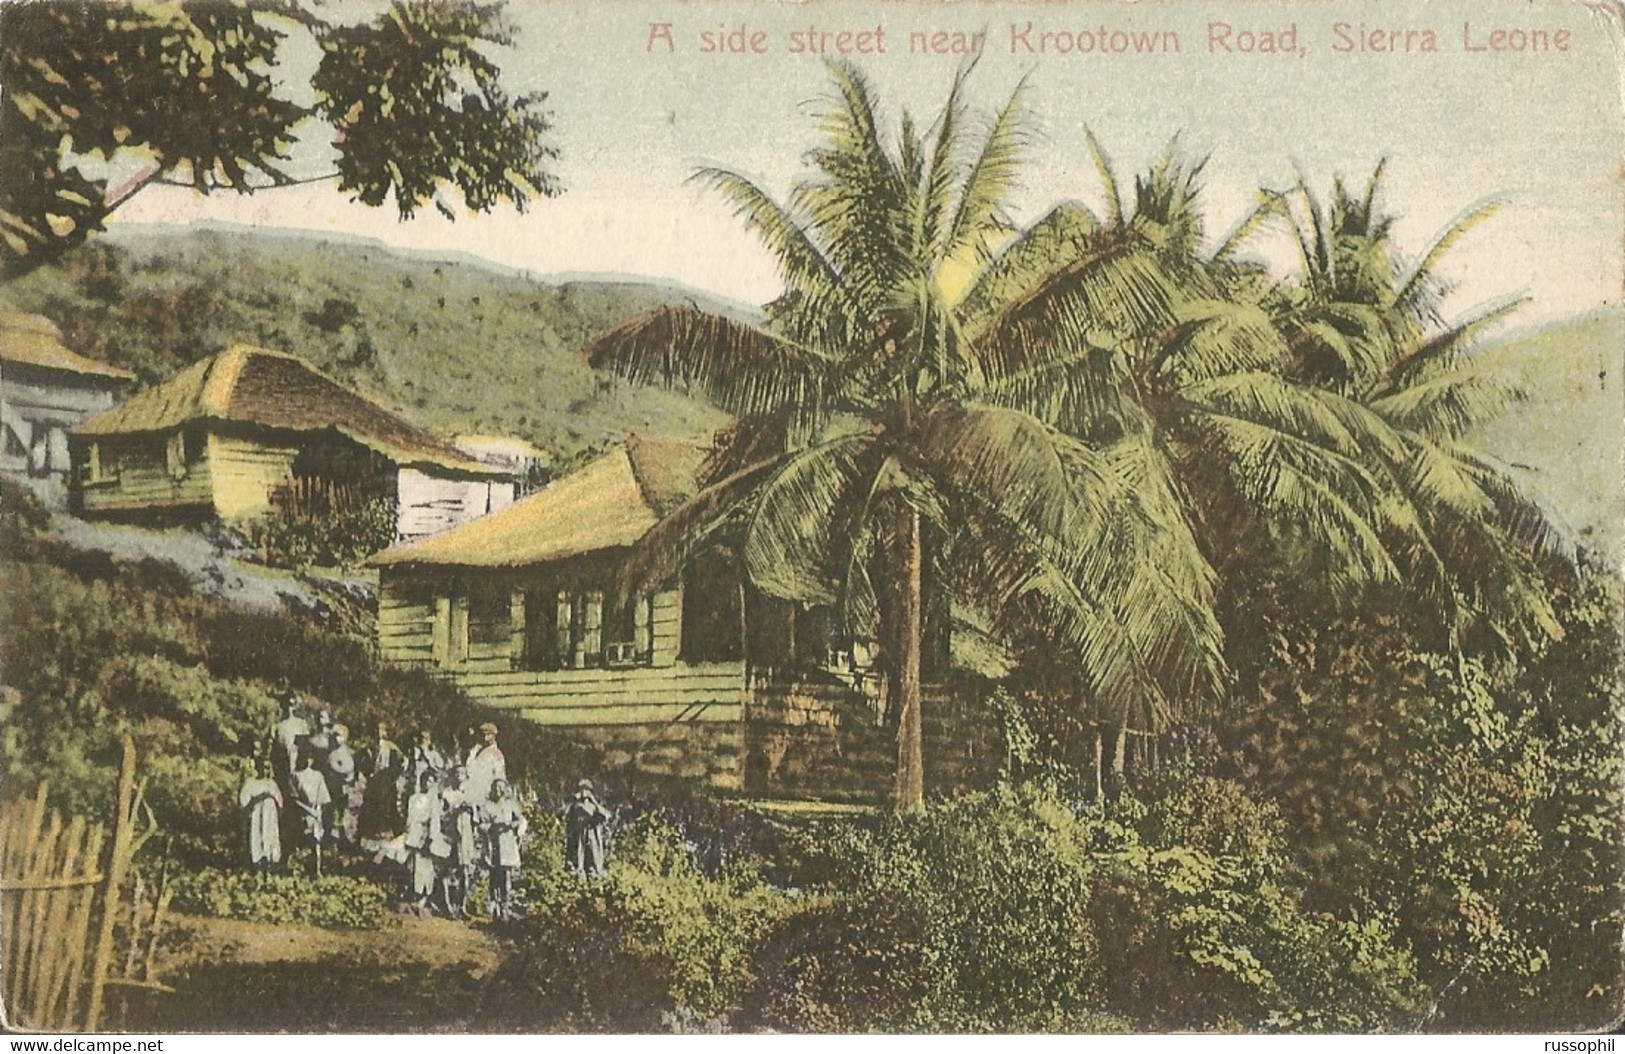 SIERRA LEONE - A SIDE STREET NEAR KROOTOWN ROAD - 1905 - Sierra Leone